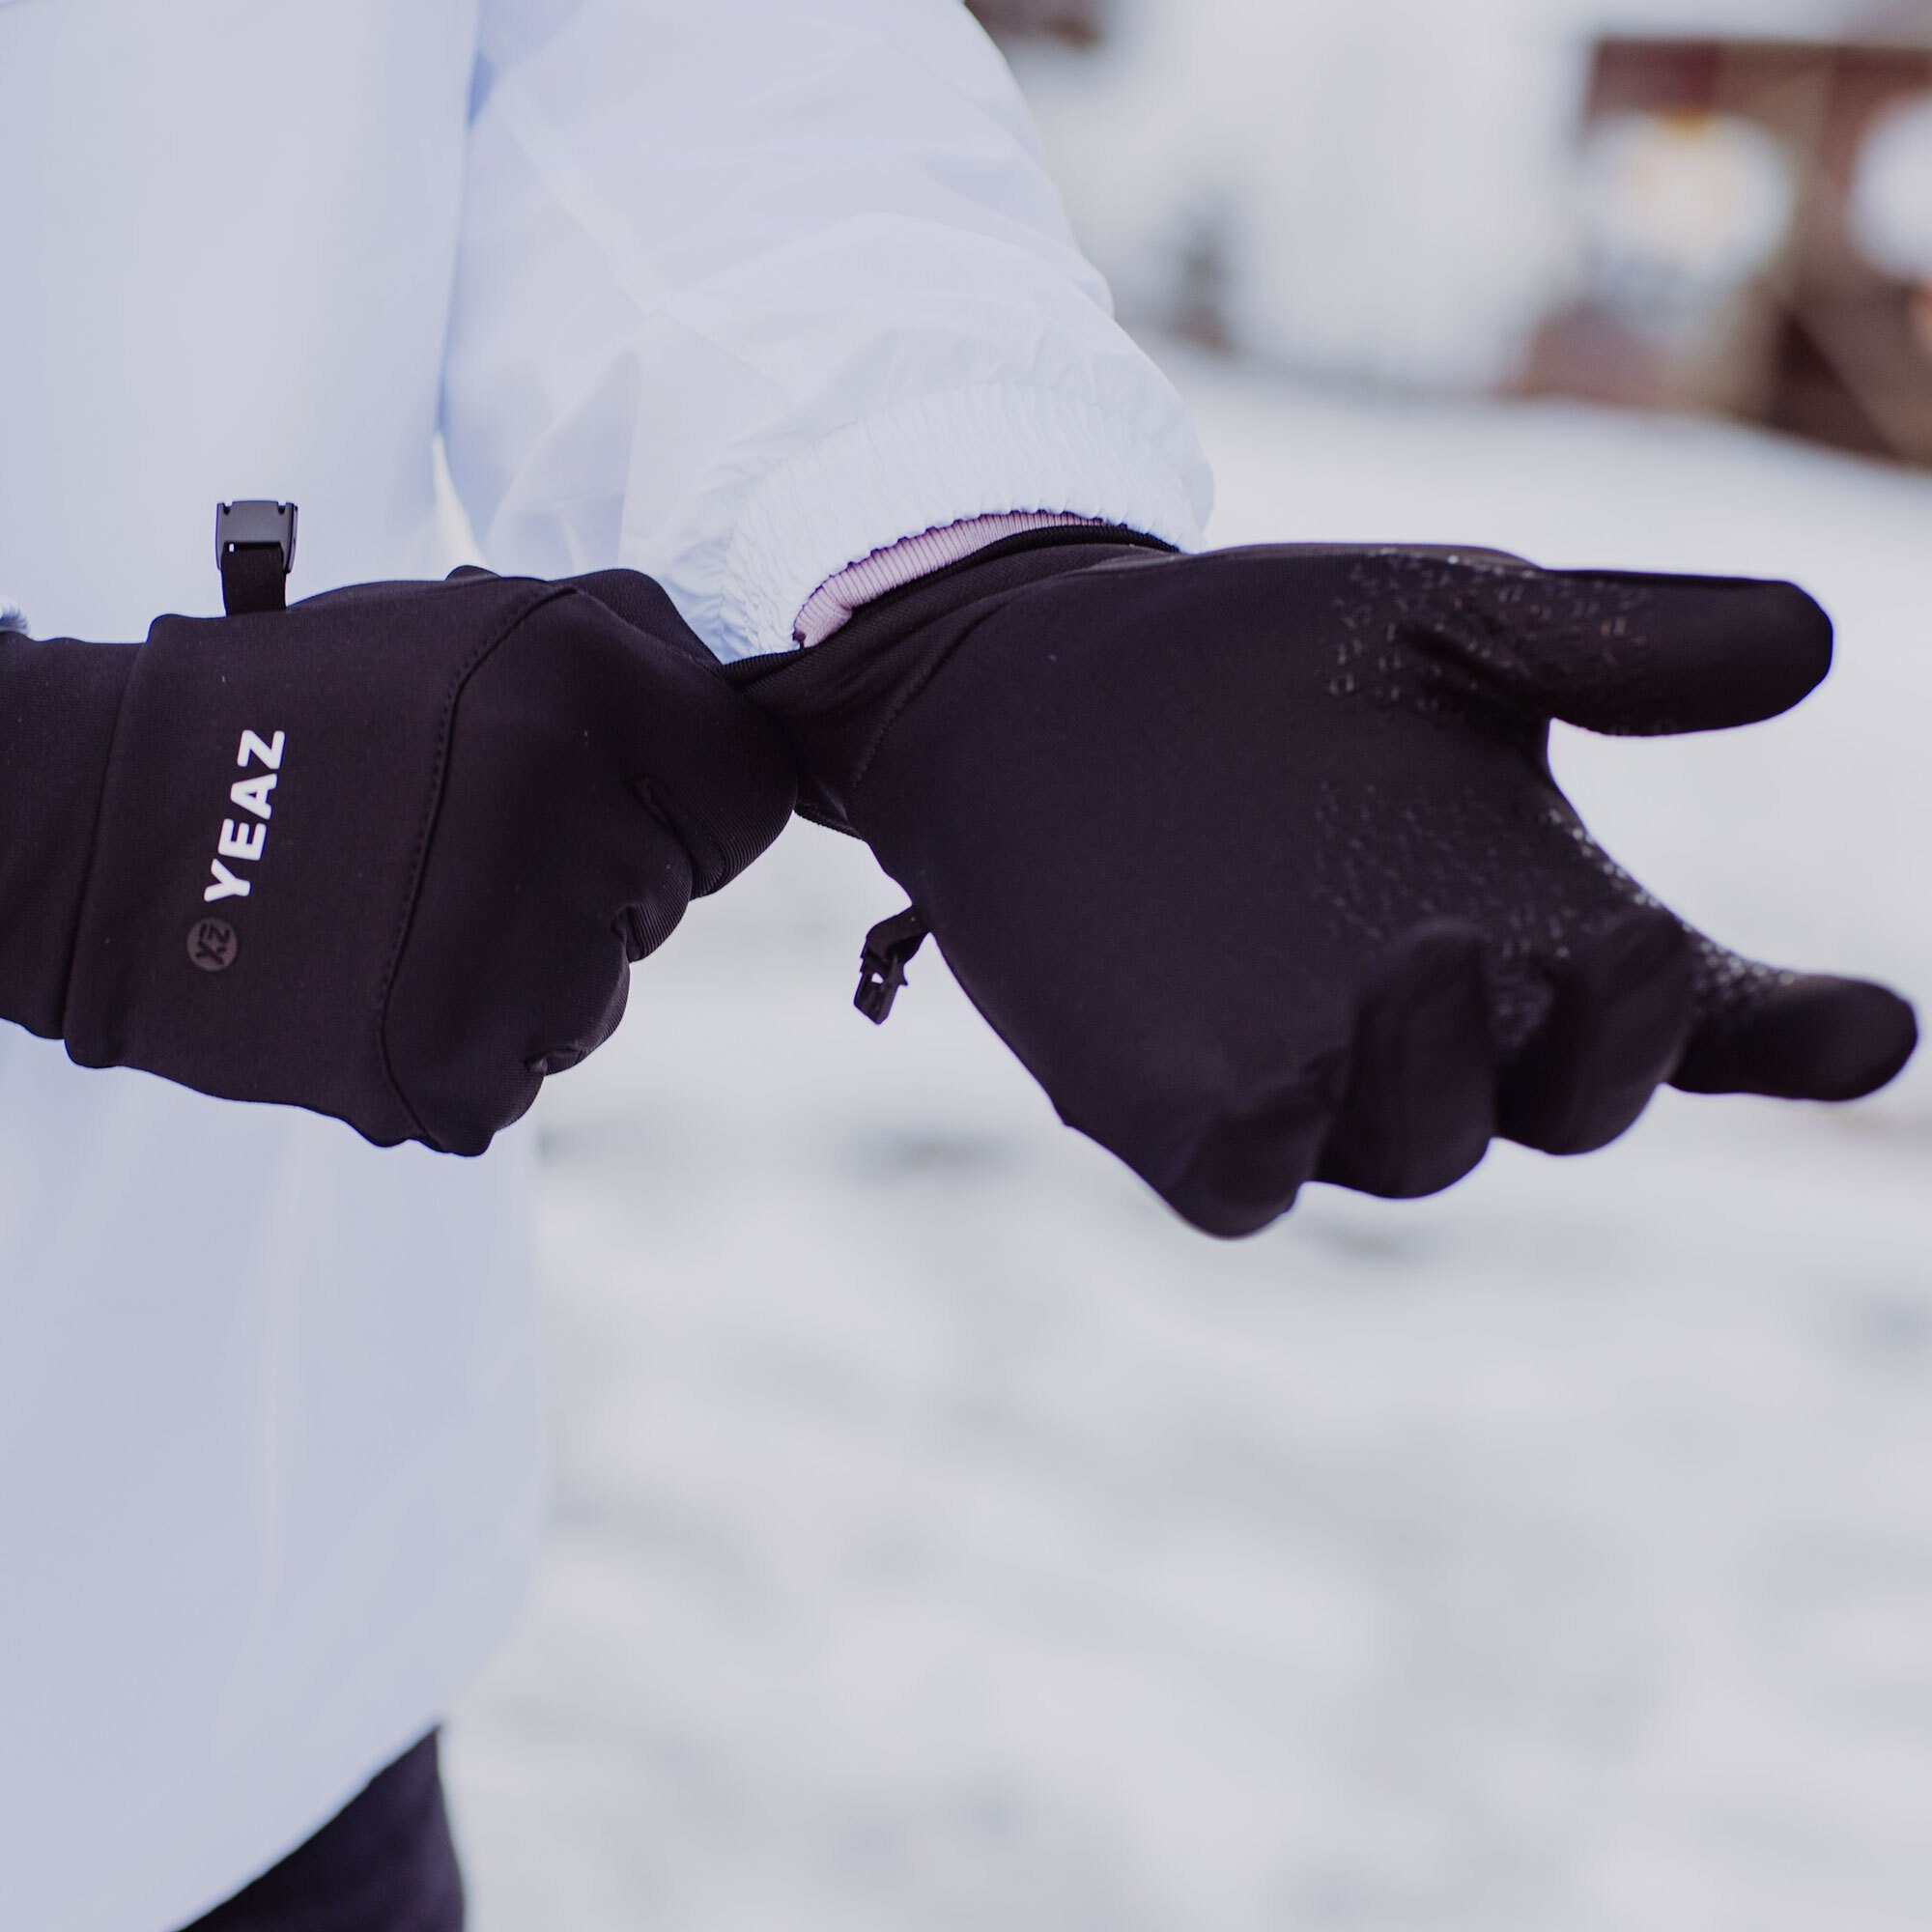 YEAZ sporthandschuhe für Skihandschuhe Touch-Funktion Devices JIP Smart